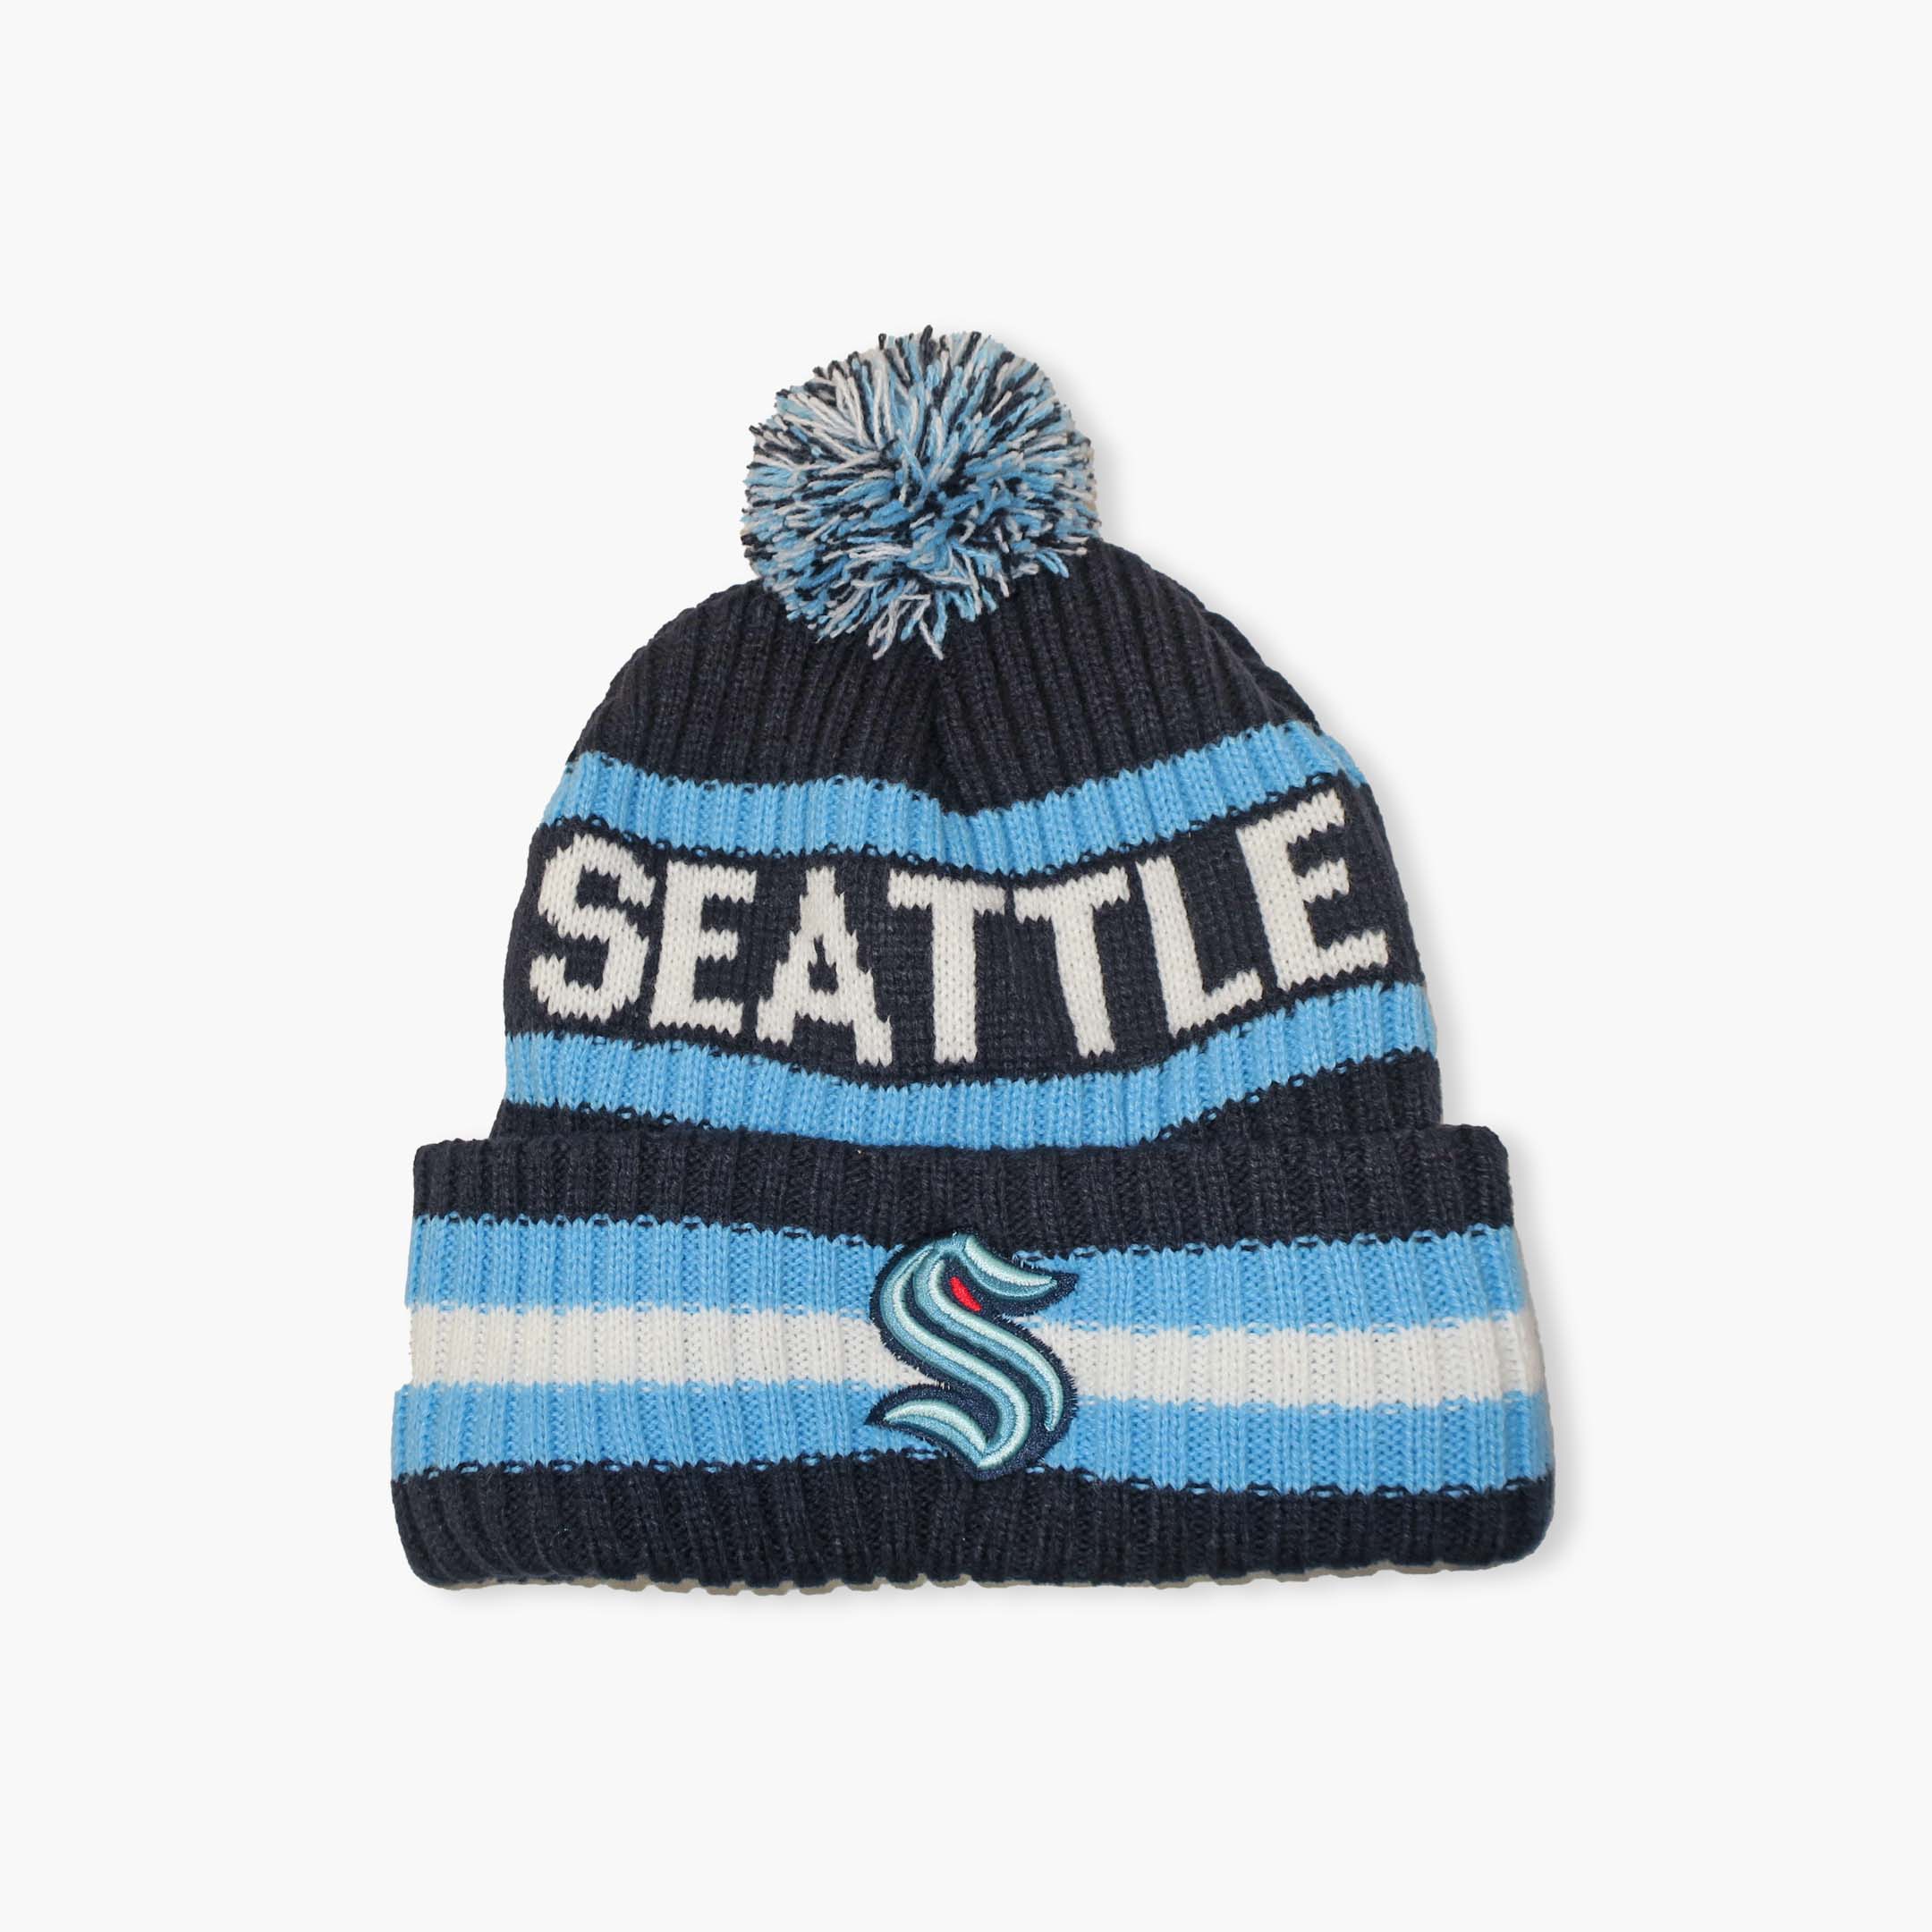 Seattle Kraken Beanie Hat 